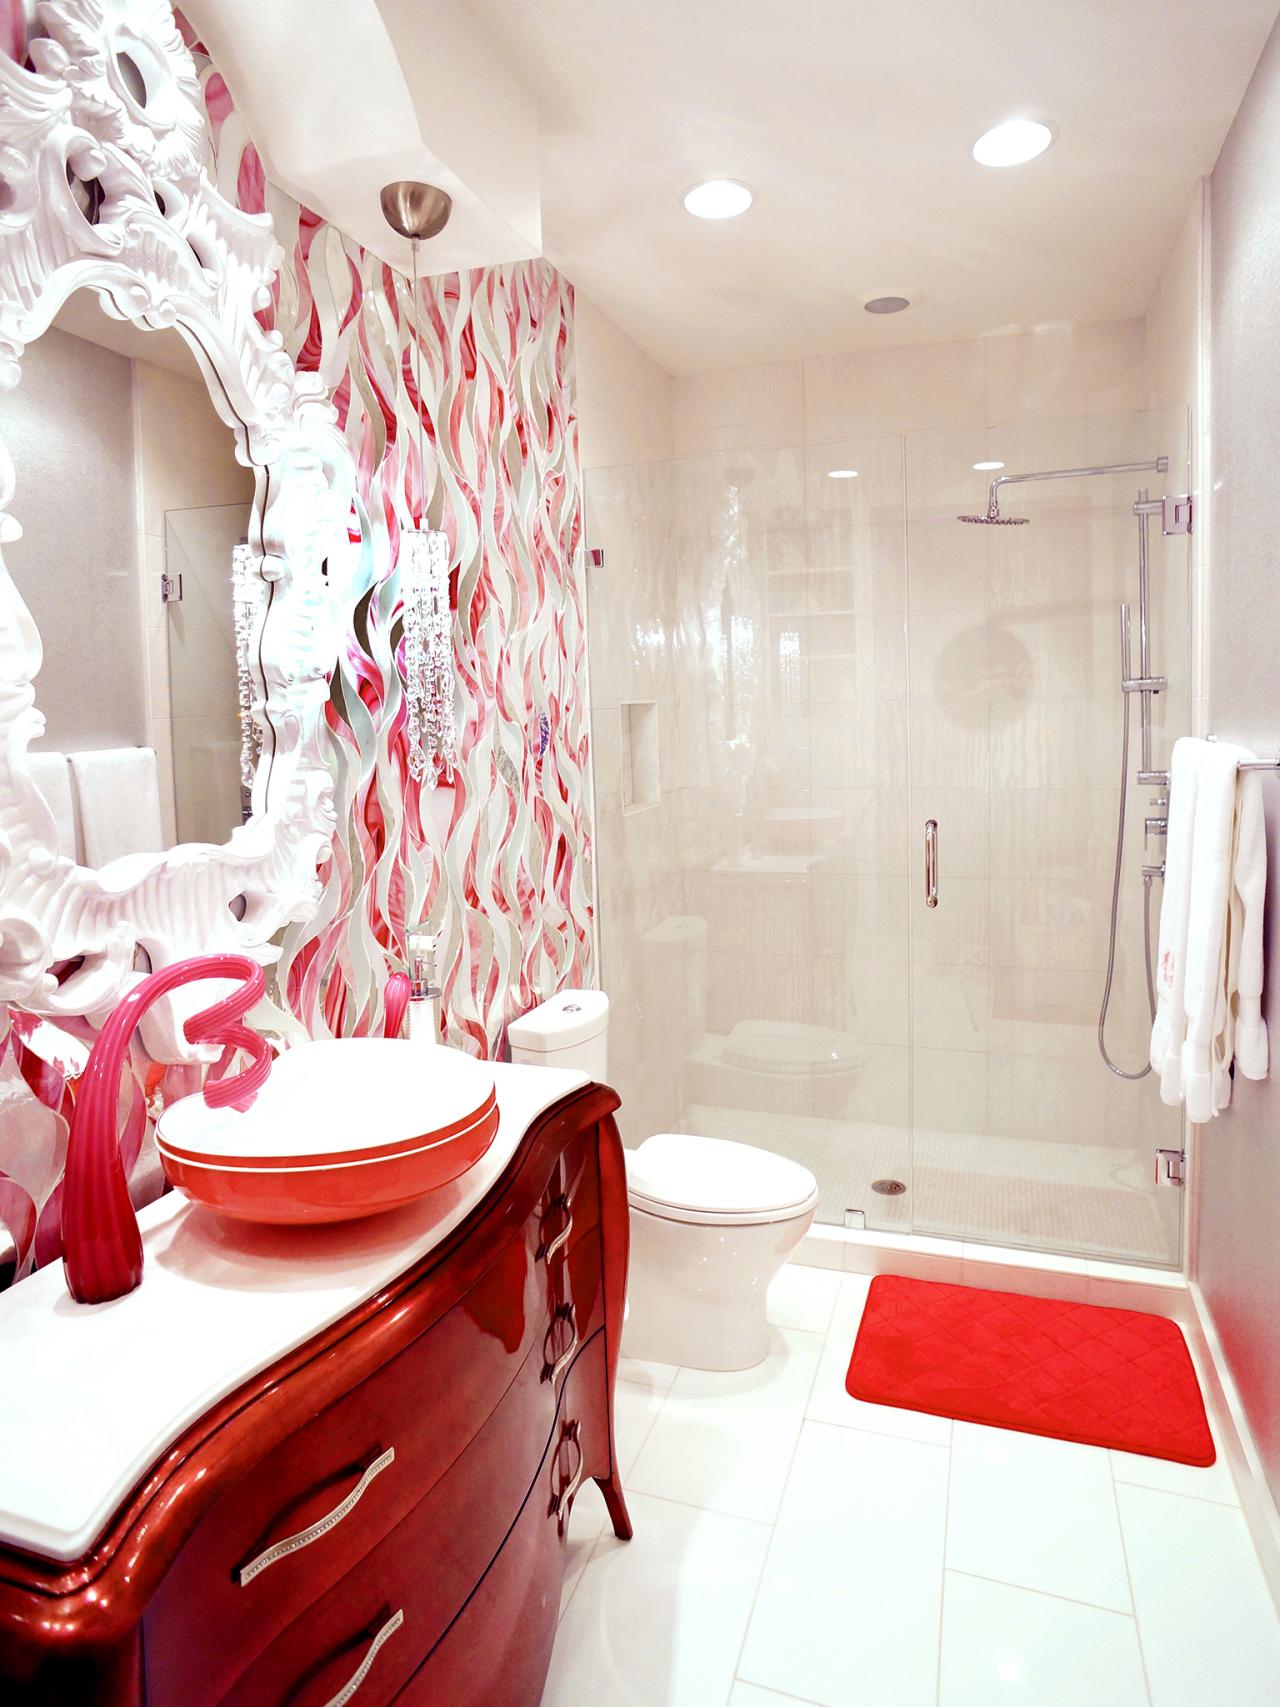 douche cabine toilettes salle de bain rouge rose eclectique peinture art mirroir ration-design-moderne-style-design-d'interieur